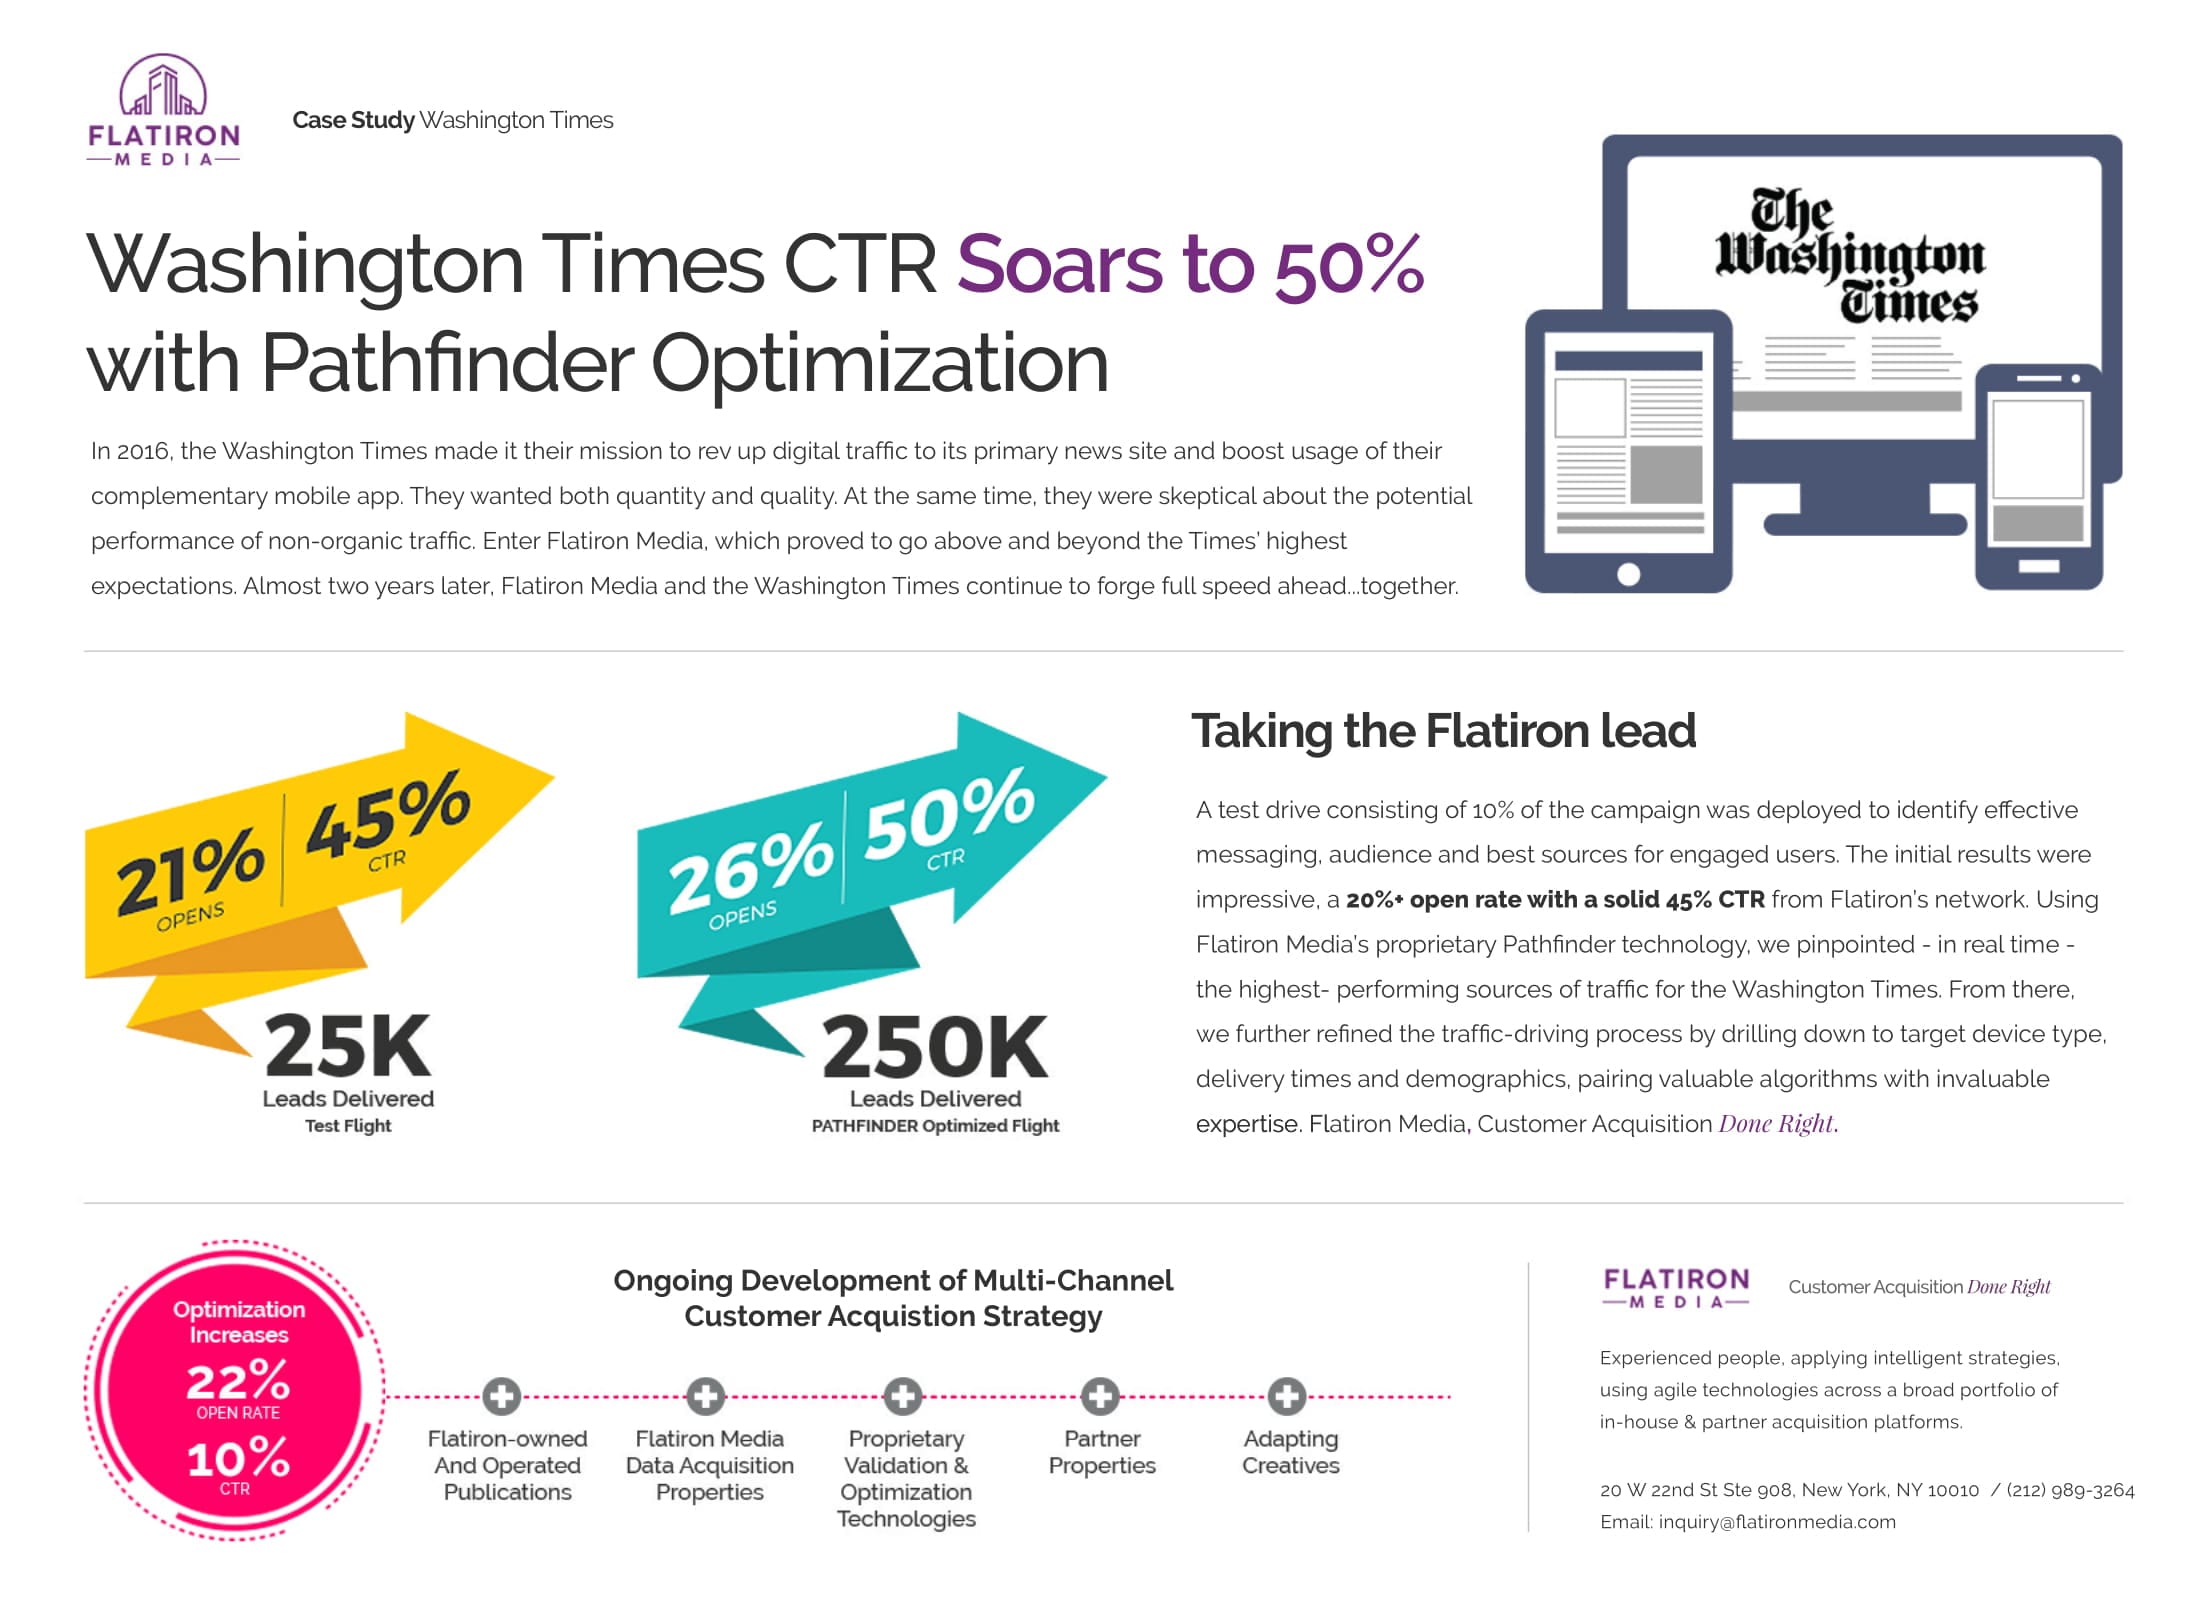 Washington Times Case Study Optimization Advertise